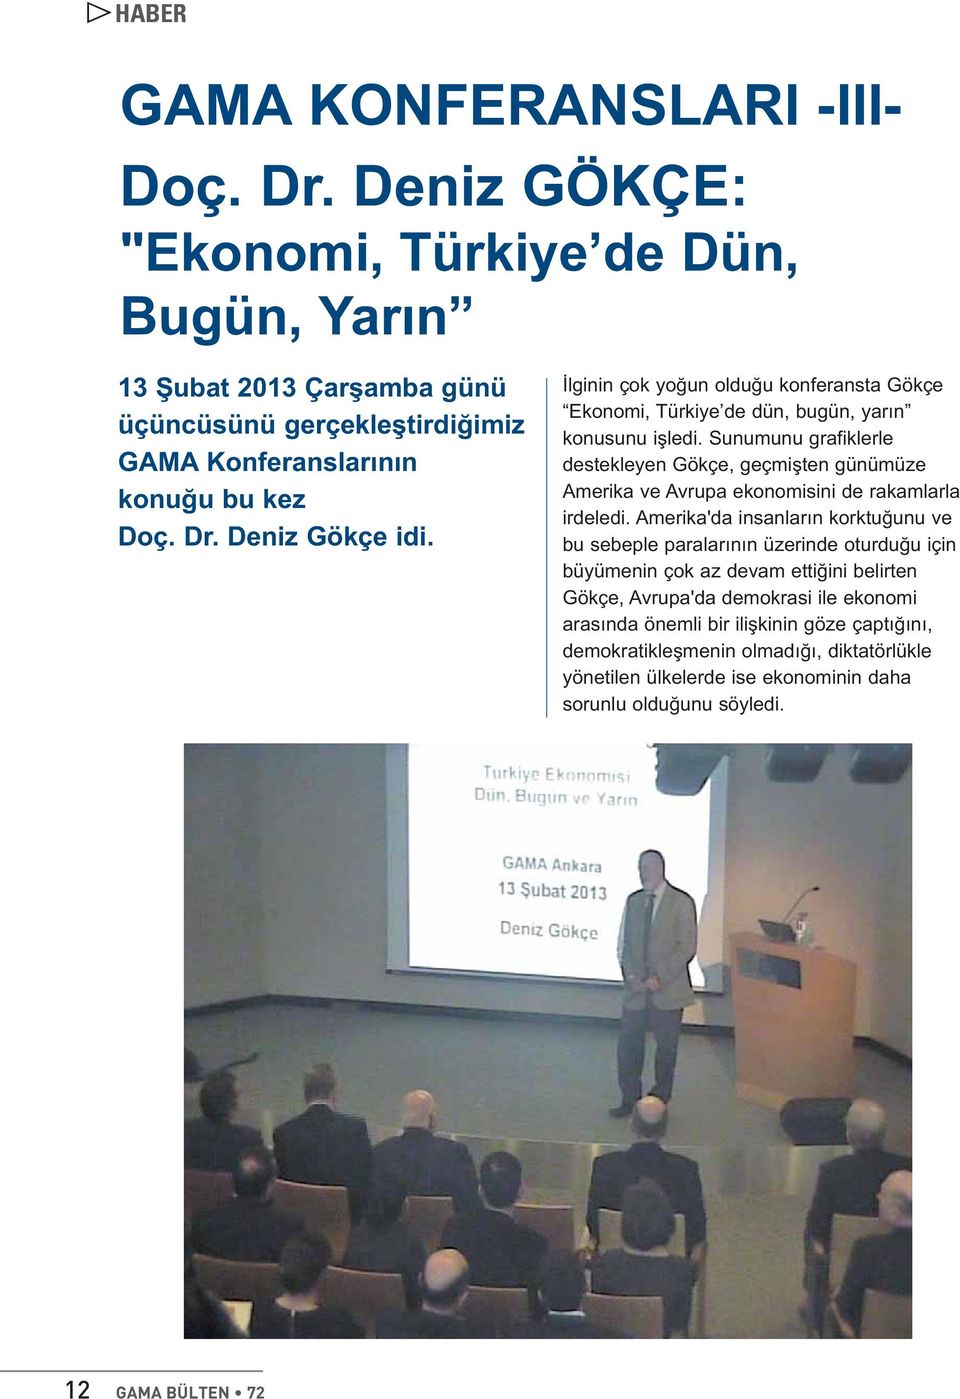 İlginin çok yoğun olduğu konferansta Gökçe Ekonomi, Türkiye de dün, bugün, yarın konusunu işledi.